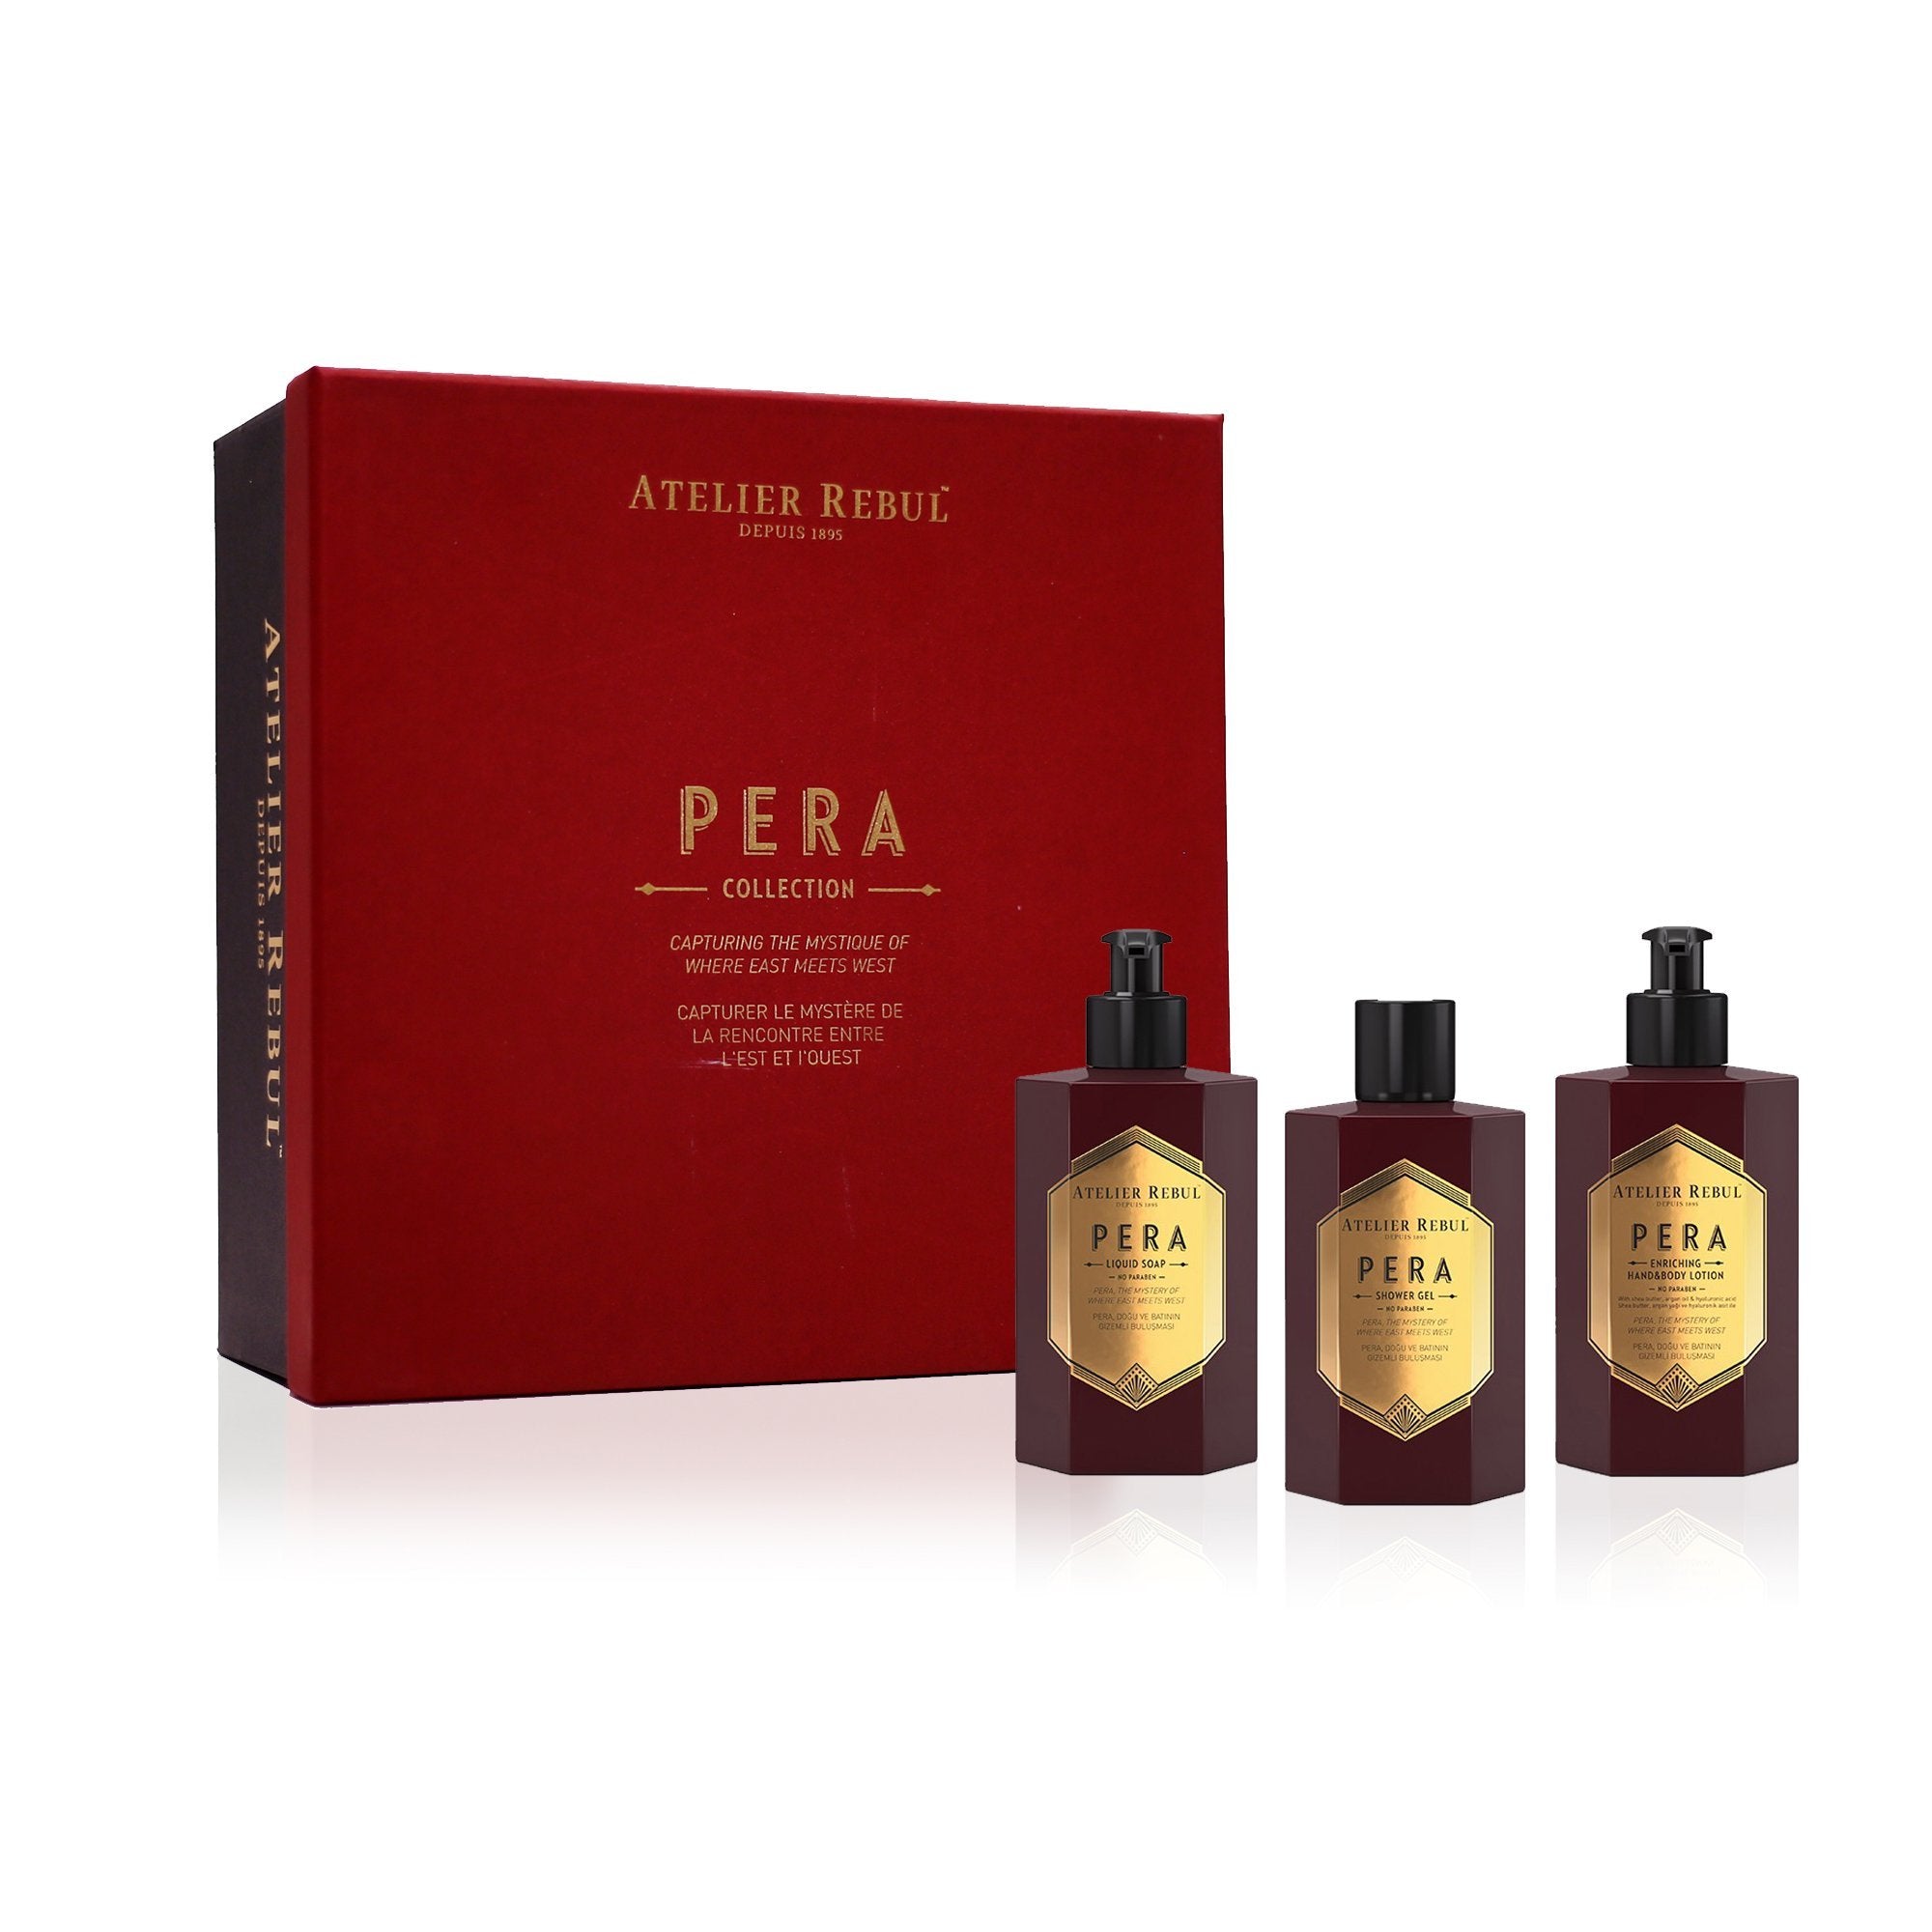 pera geschenkbox mit rotem deckel und schwarzer box neben set aus drei pera flaeschchen. weisser hintergrund.